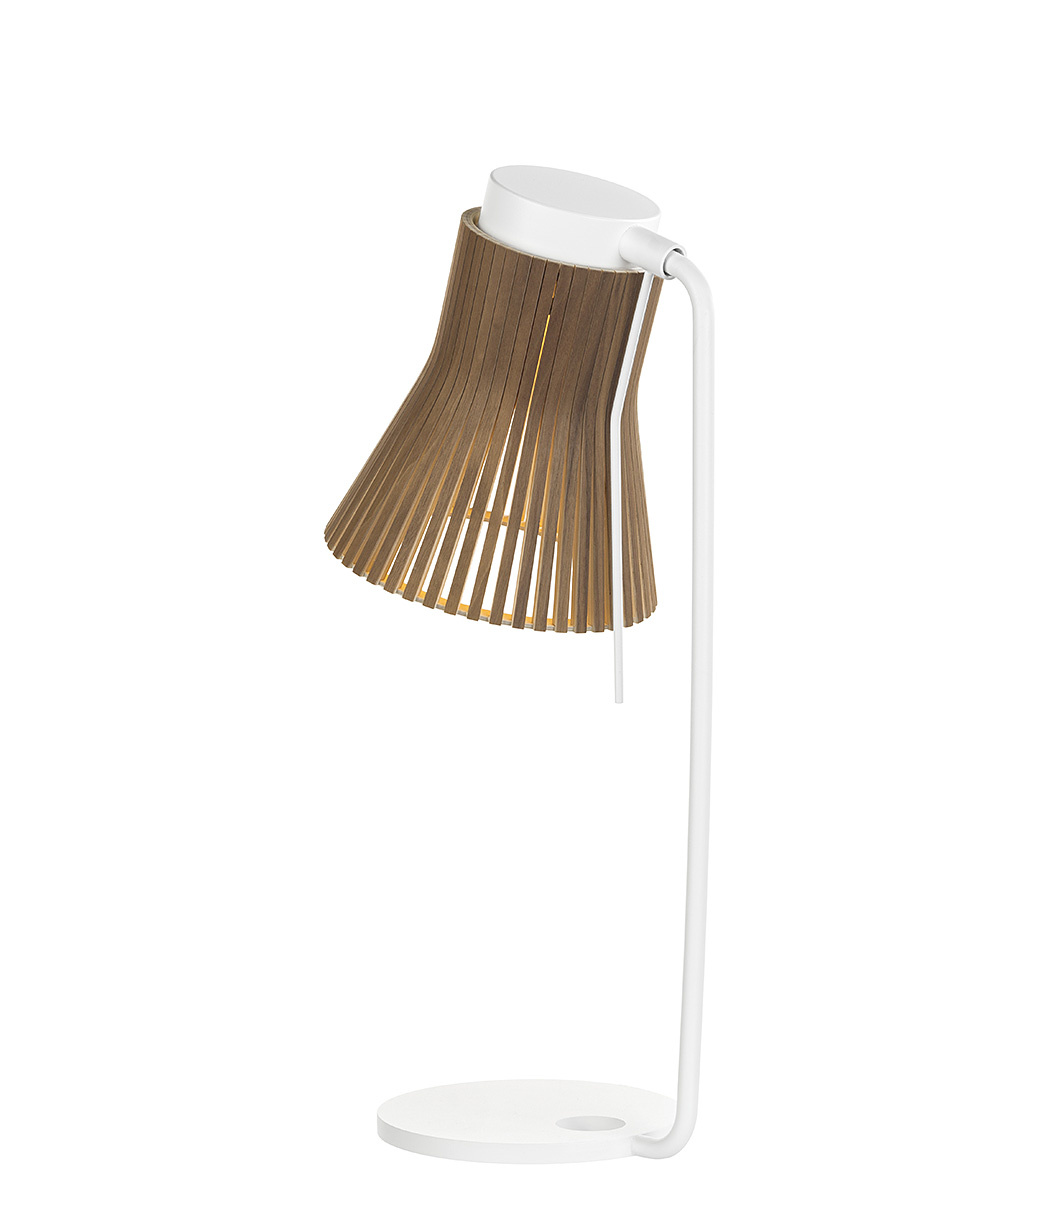 Lampe de table Petite 4620 est disponible en placage de noyer